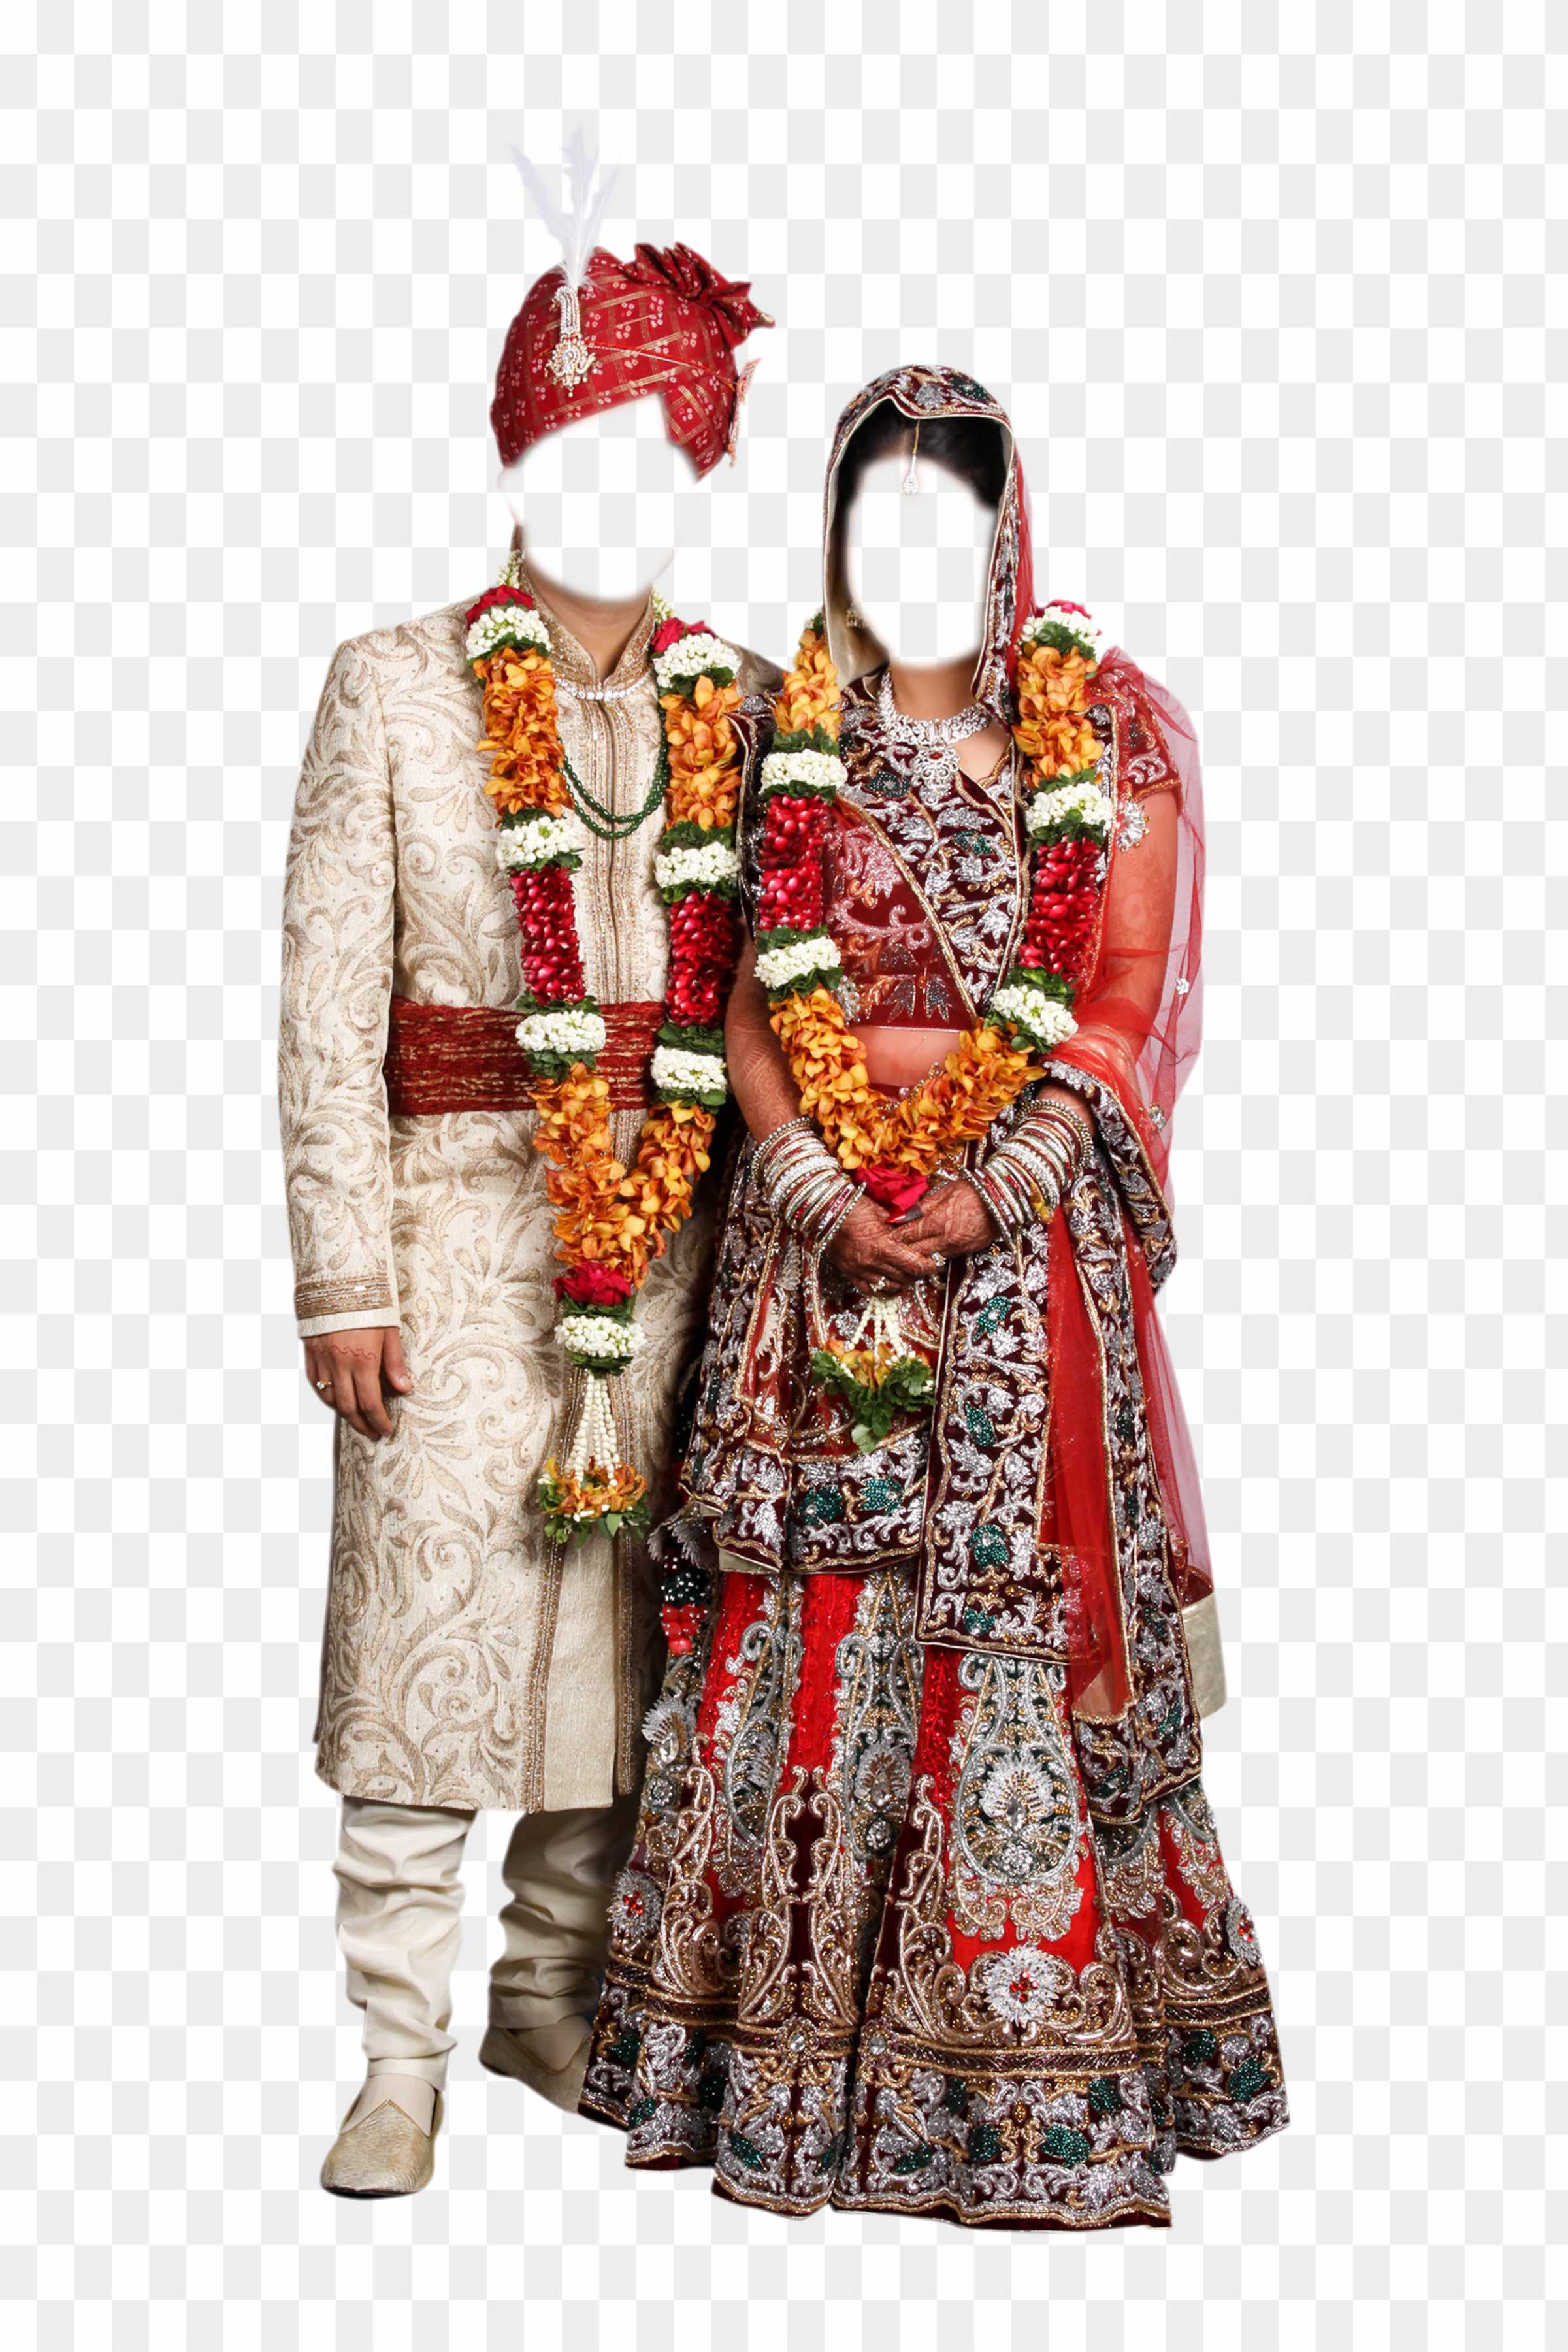 Wedding Dress PNG Image - Free Download